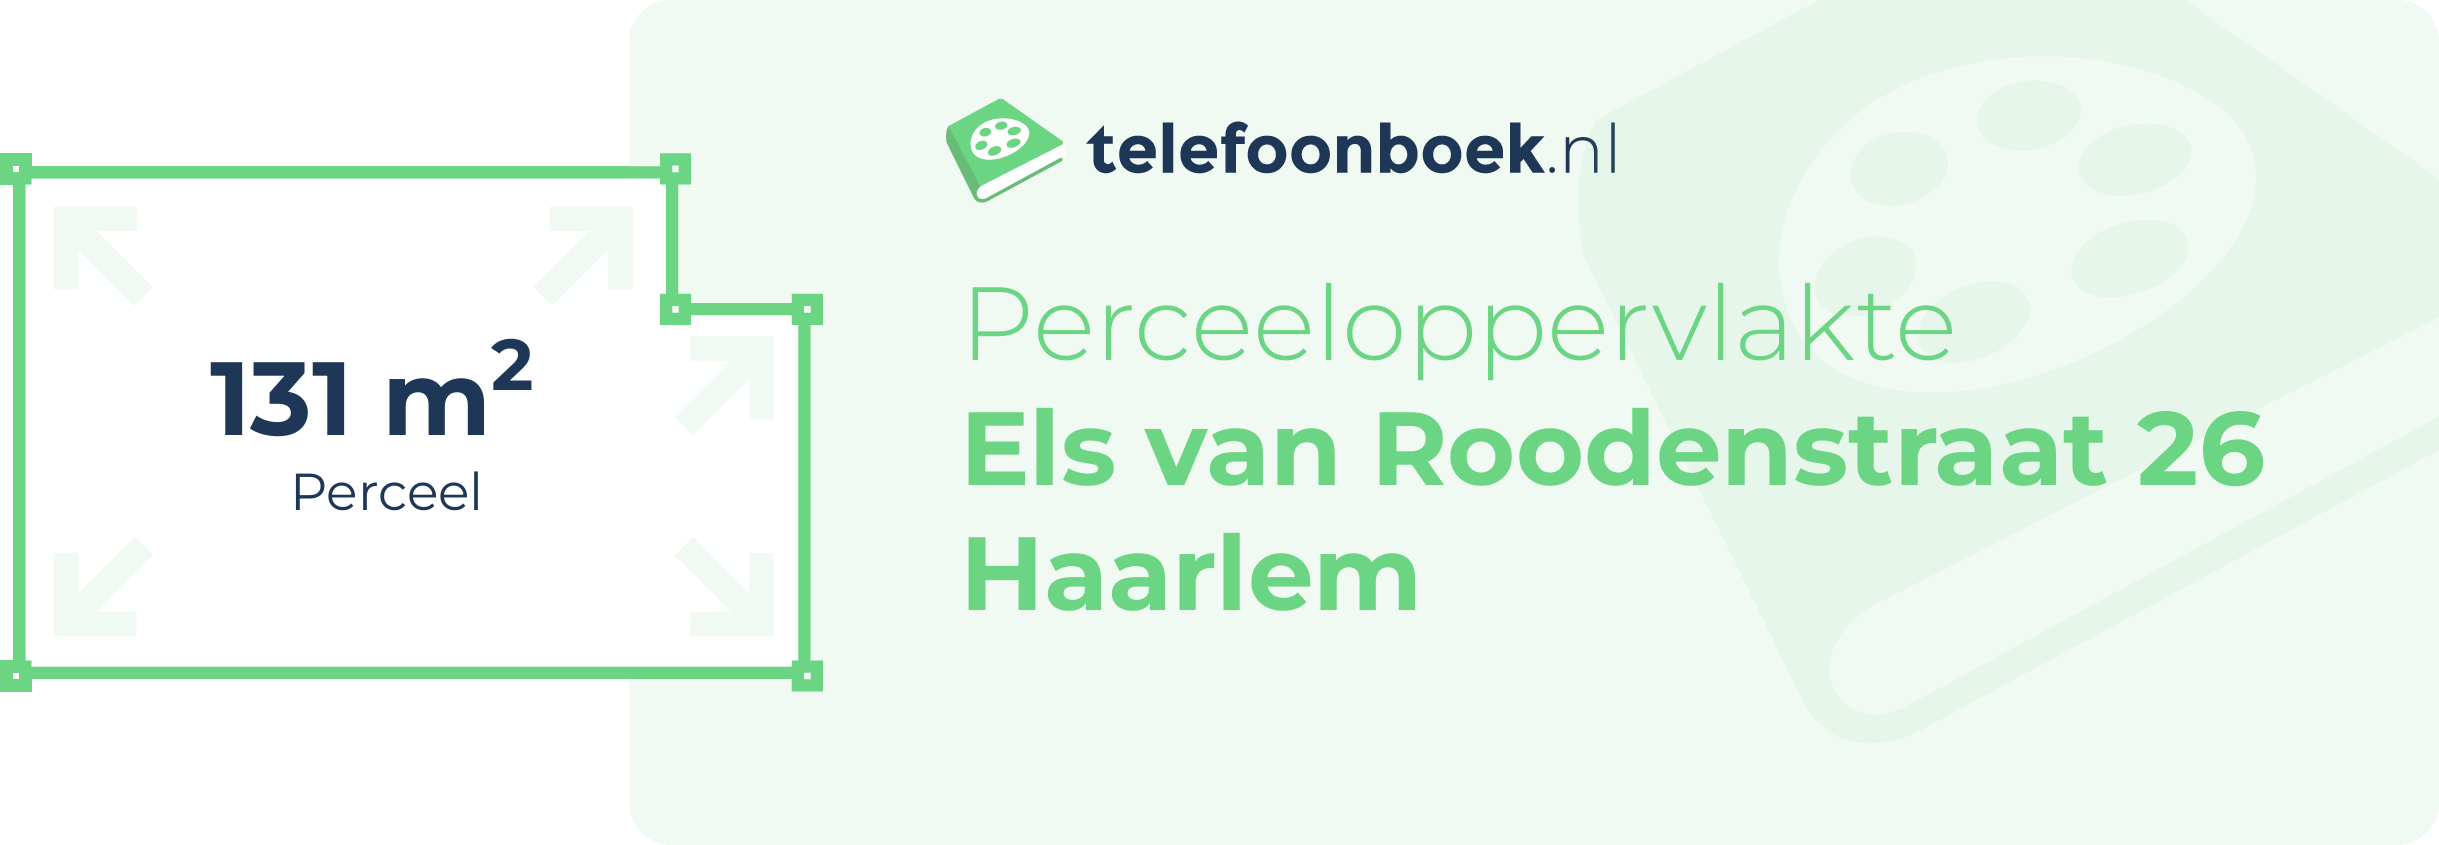 Perceeloppervlakte Els Van Roodenstraat 26 Haarlem